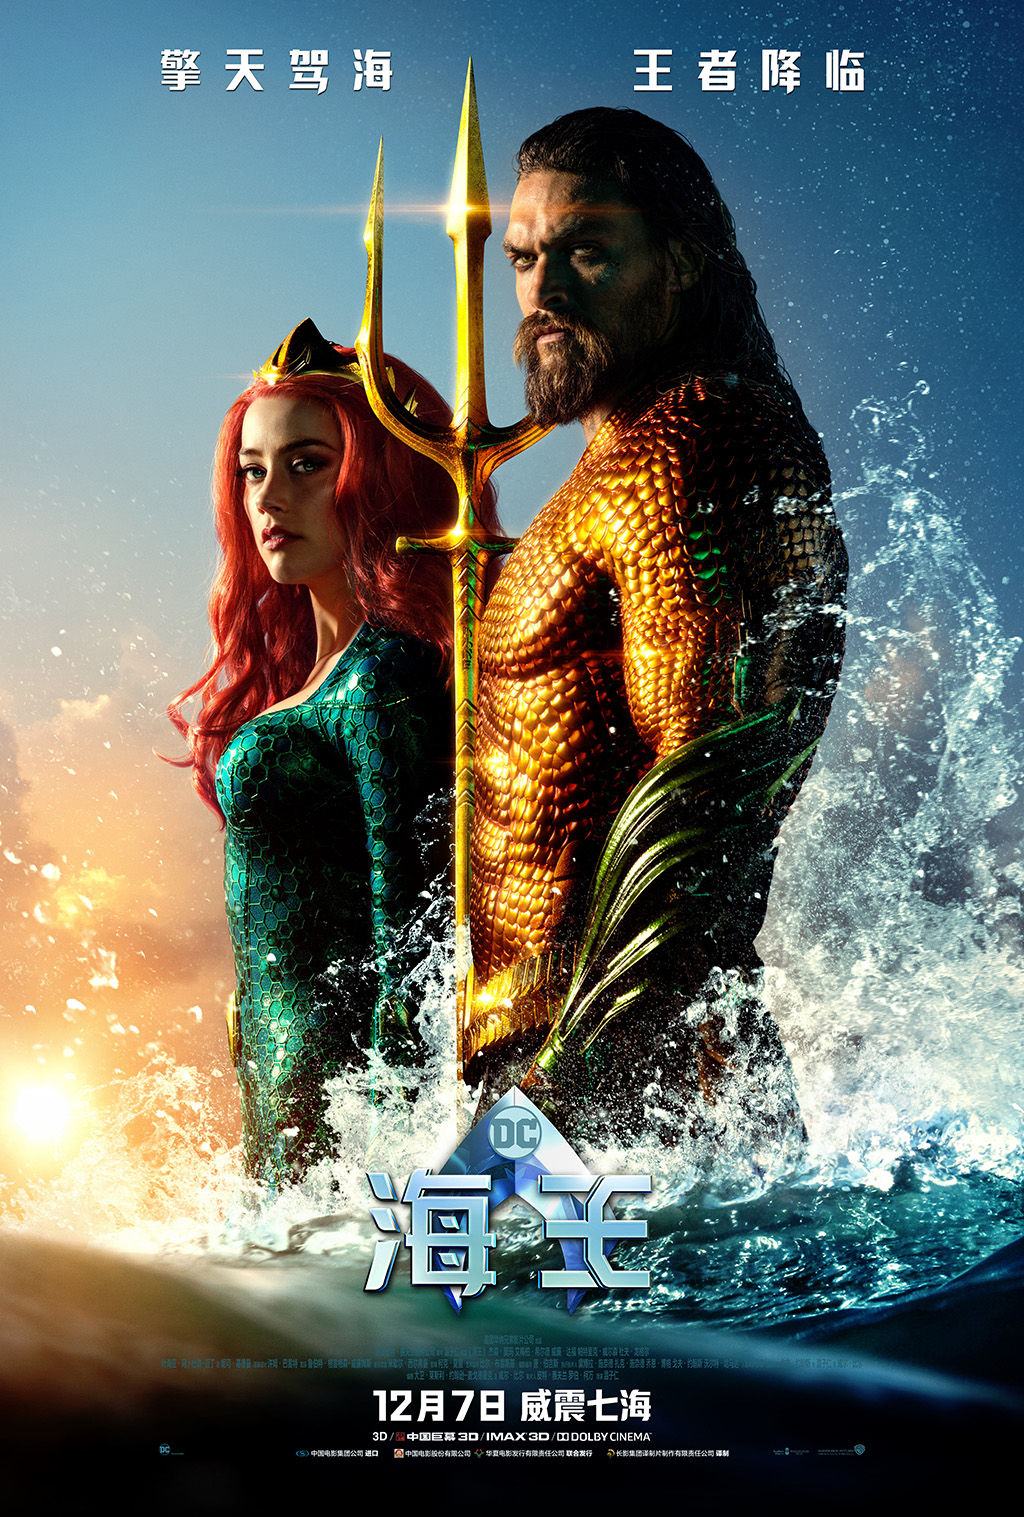 [海王].Aquaman.2018.IMAX.UHD.BluRay.2160p.HEVC.TrueHD.7.1-BeyondHD     83.05G-3.jpg